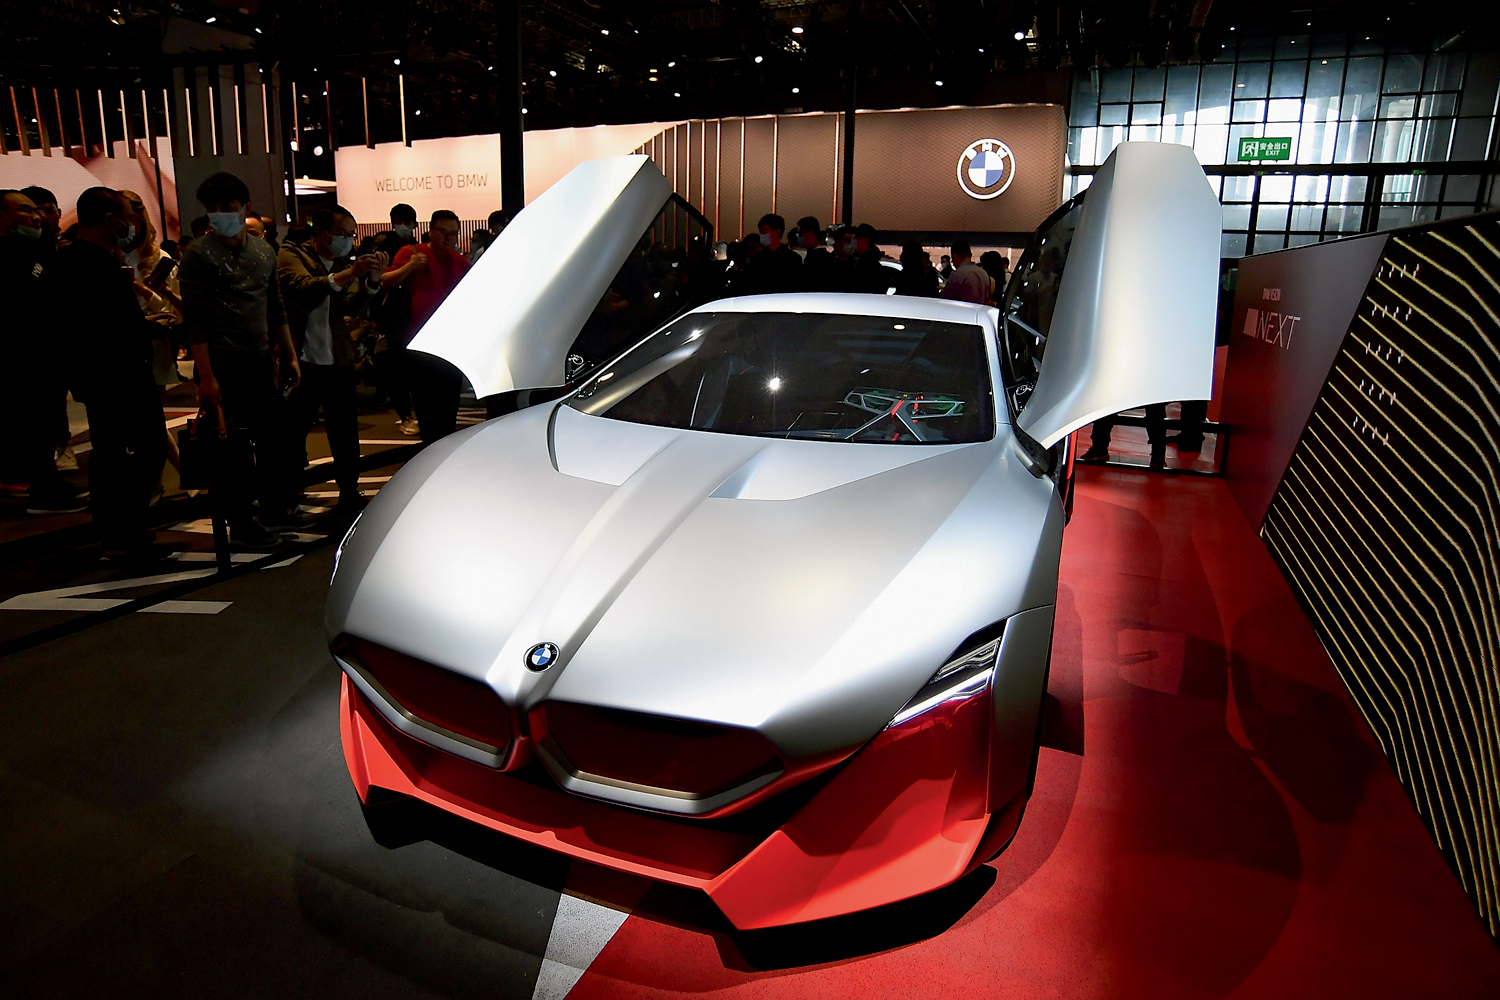 EM EVIDÊNCIA - BMW elétrica Vision M Next, no Salão Internacional do Automóvel de Xangai, em abril deste ano: mais Ásia, menos eurocentrismo -